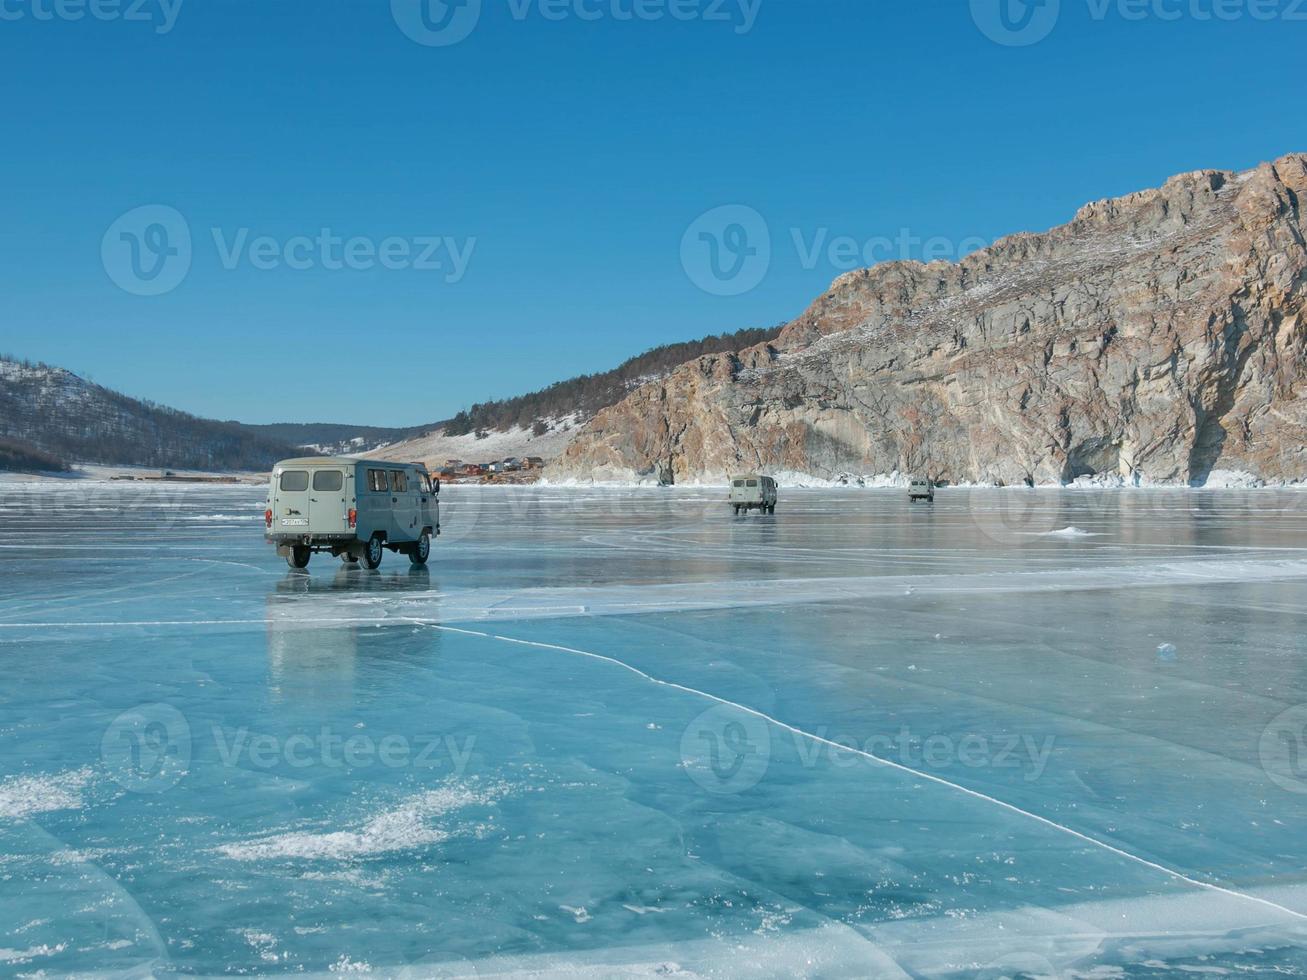 Russisch leger jeeps, klassiek vervoer nemen toeristen kruis ijs Bij meer Baikal in winter reis reizen. foto